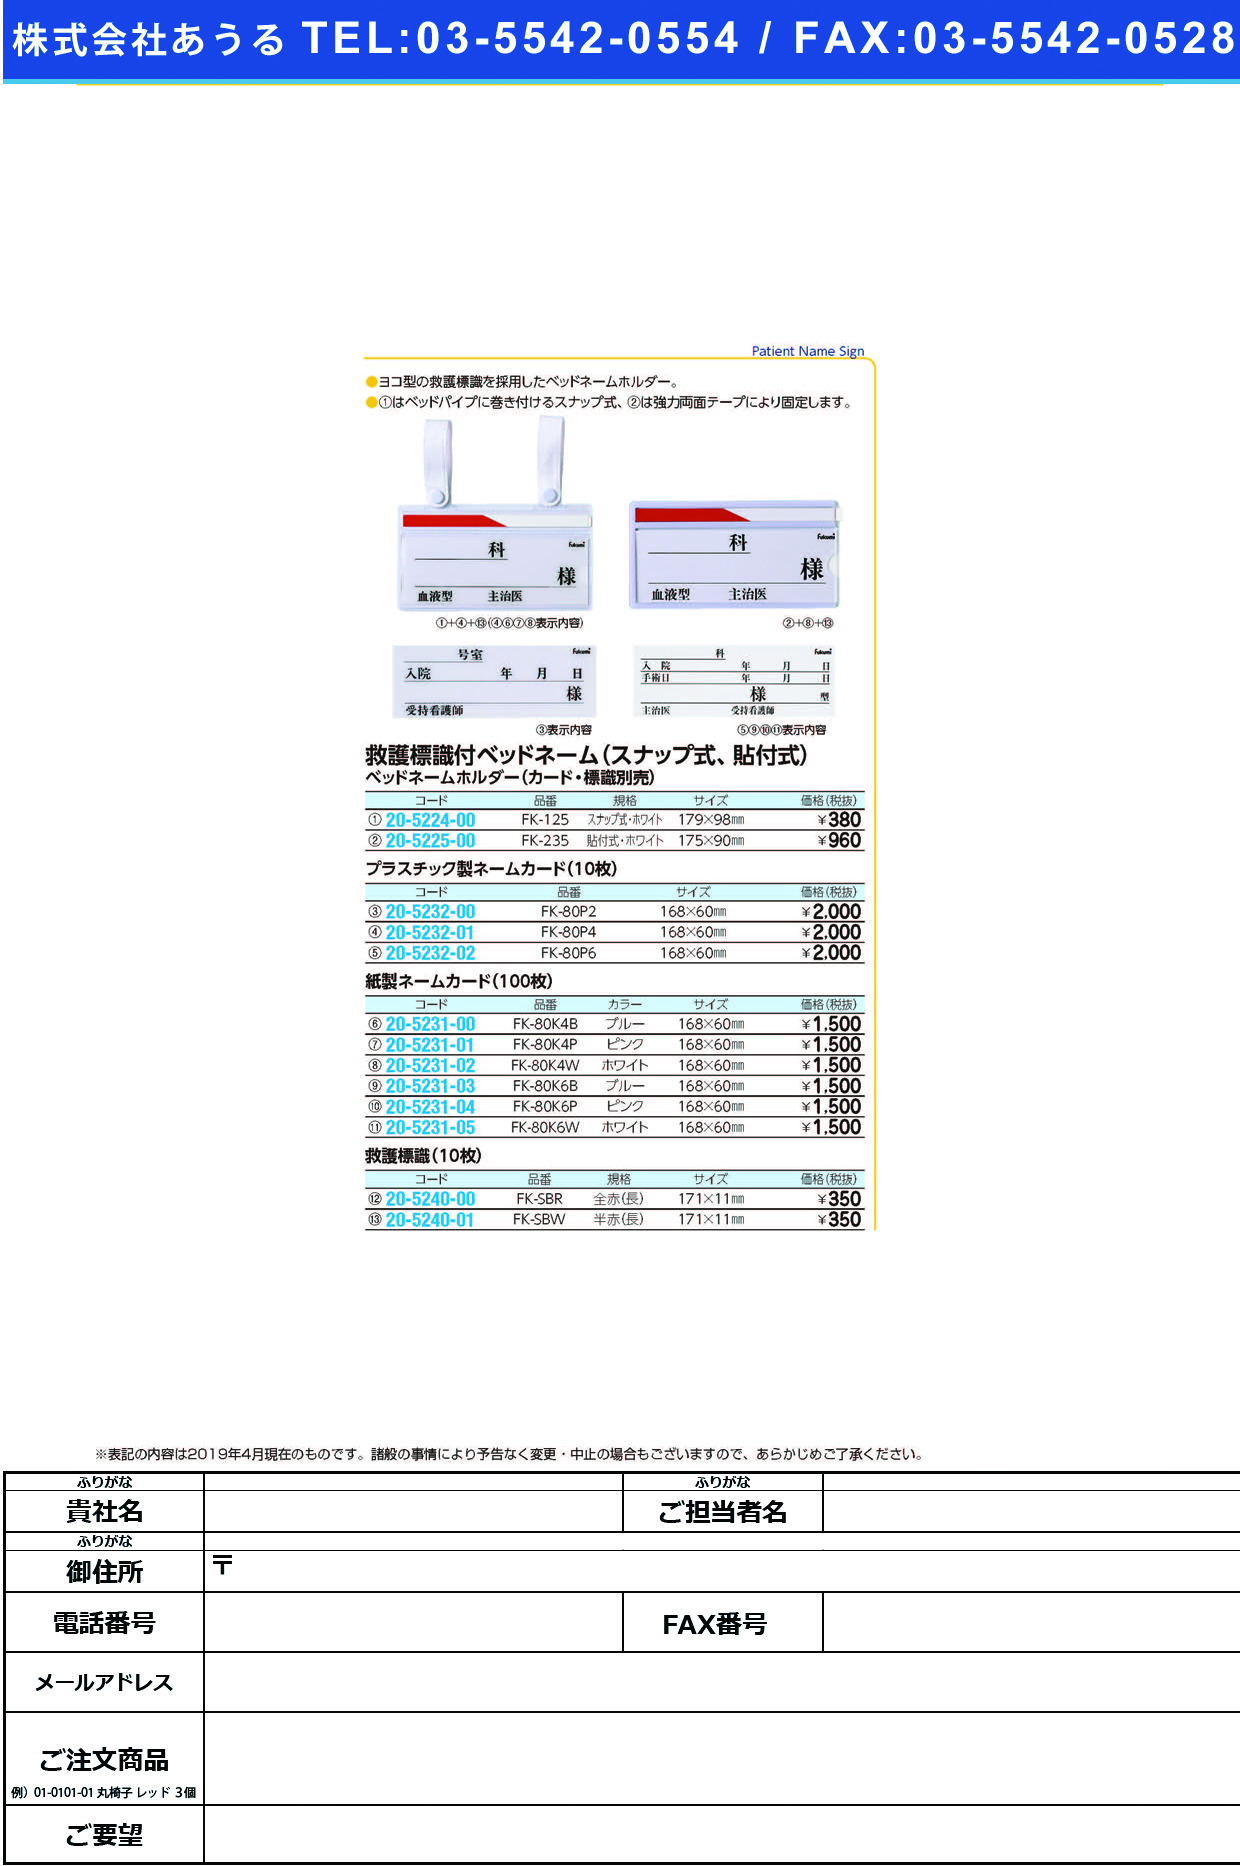 (20-5225-00)ベッドネームホルダー FK-235(ﾊﾘﾂｹｼｷ) ﾍﾞｯﾄﾞﾈｰﾑﾎﾙﾀﾞｰ【1枚単位】【2019年カタログ商品】